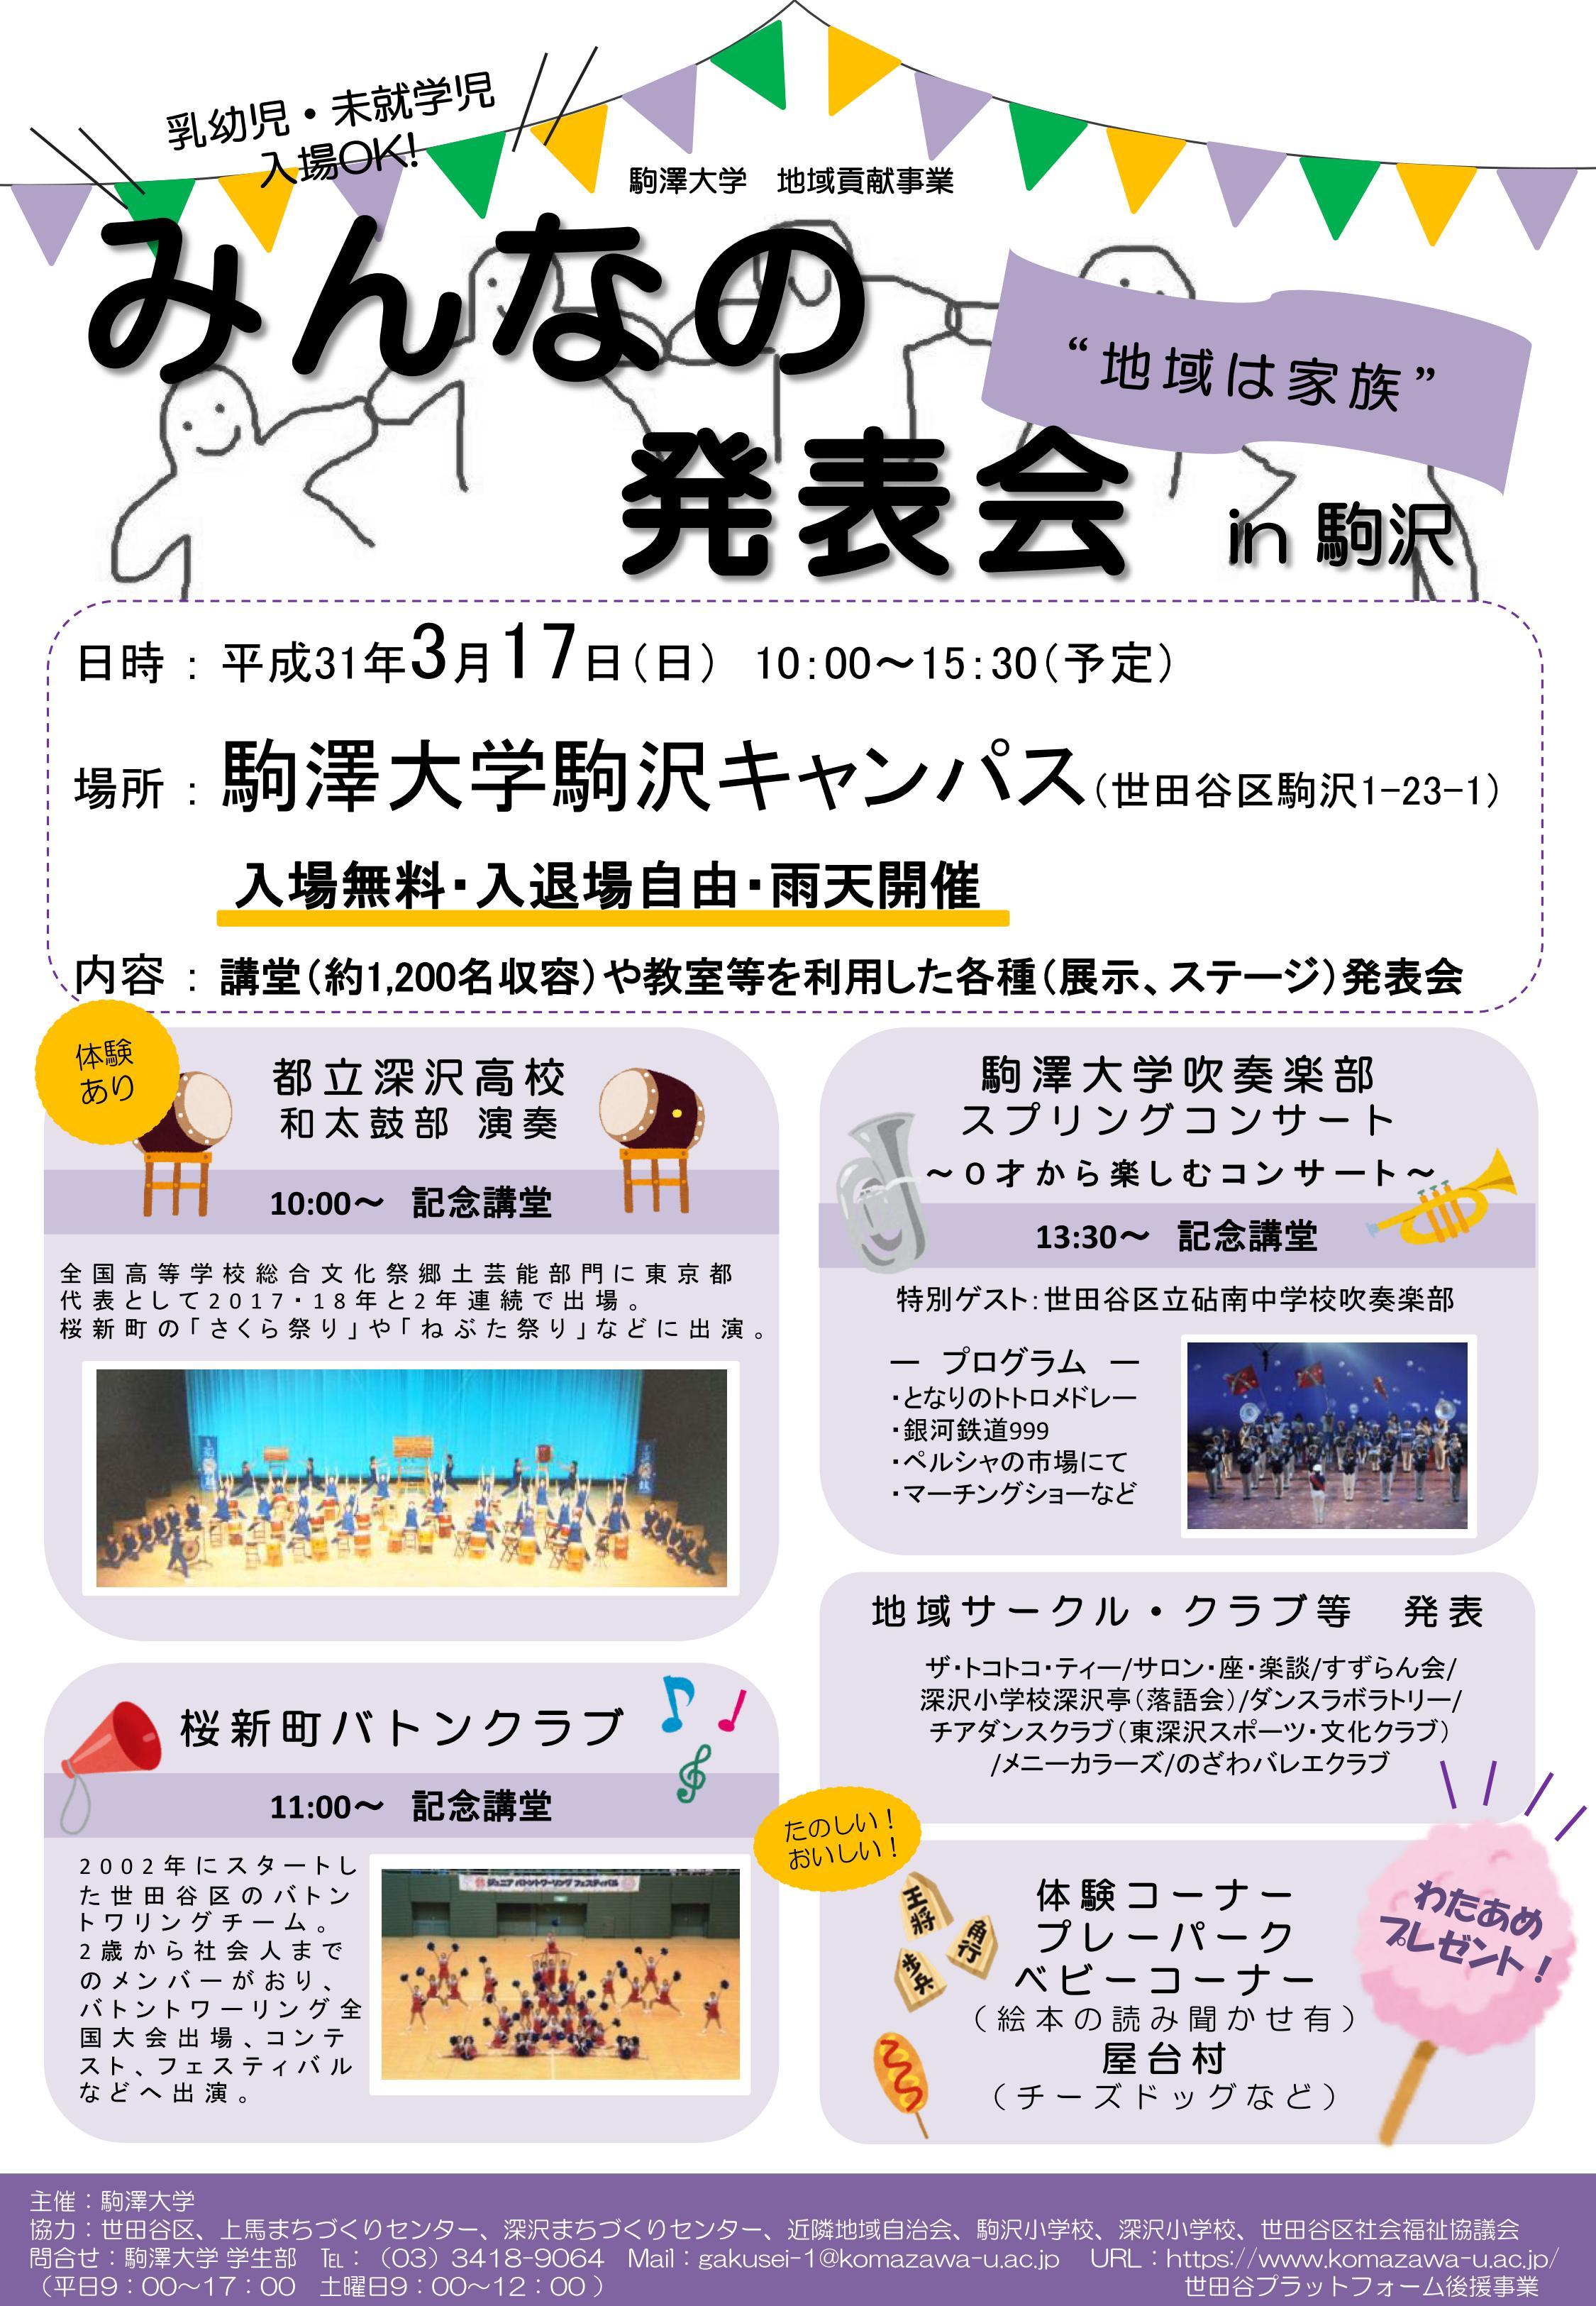 駒澤大学が3月17日に「みんなの発表会 in 駒沢2018」を開催 -- 学生サークルや地域のサークルがステージ演奏や作品展示などを実施